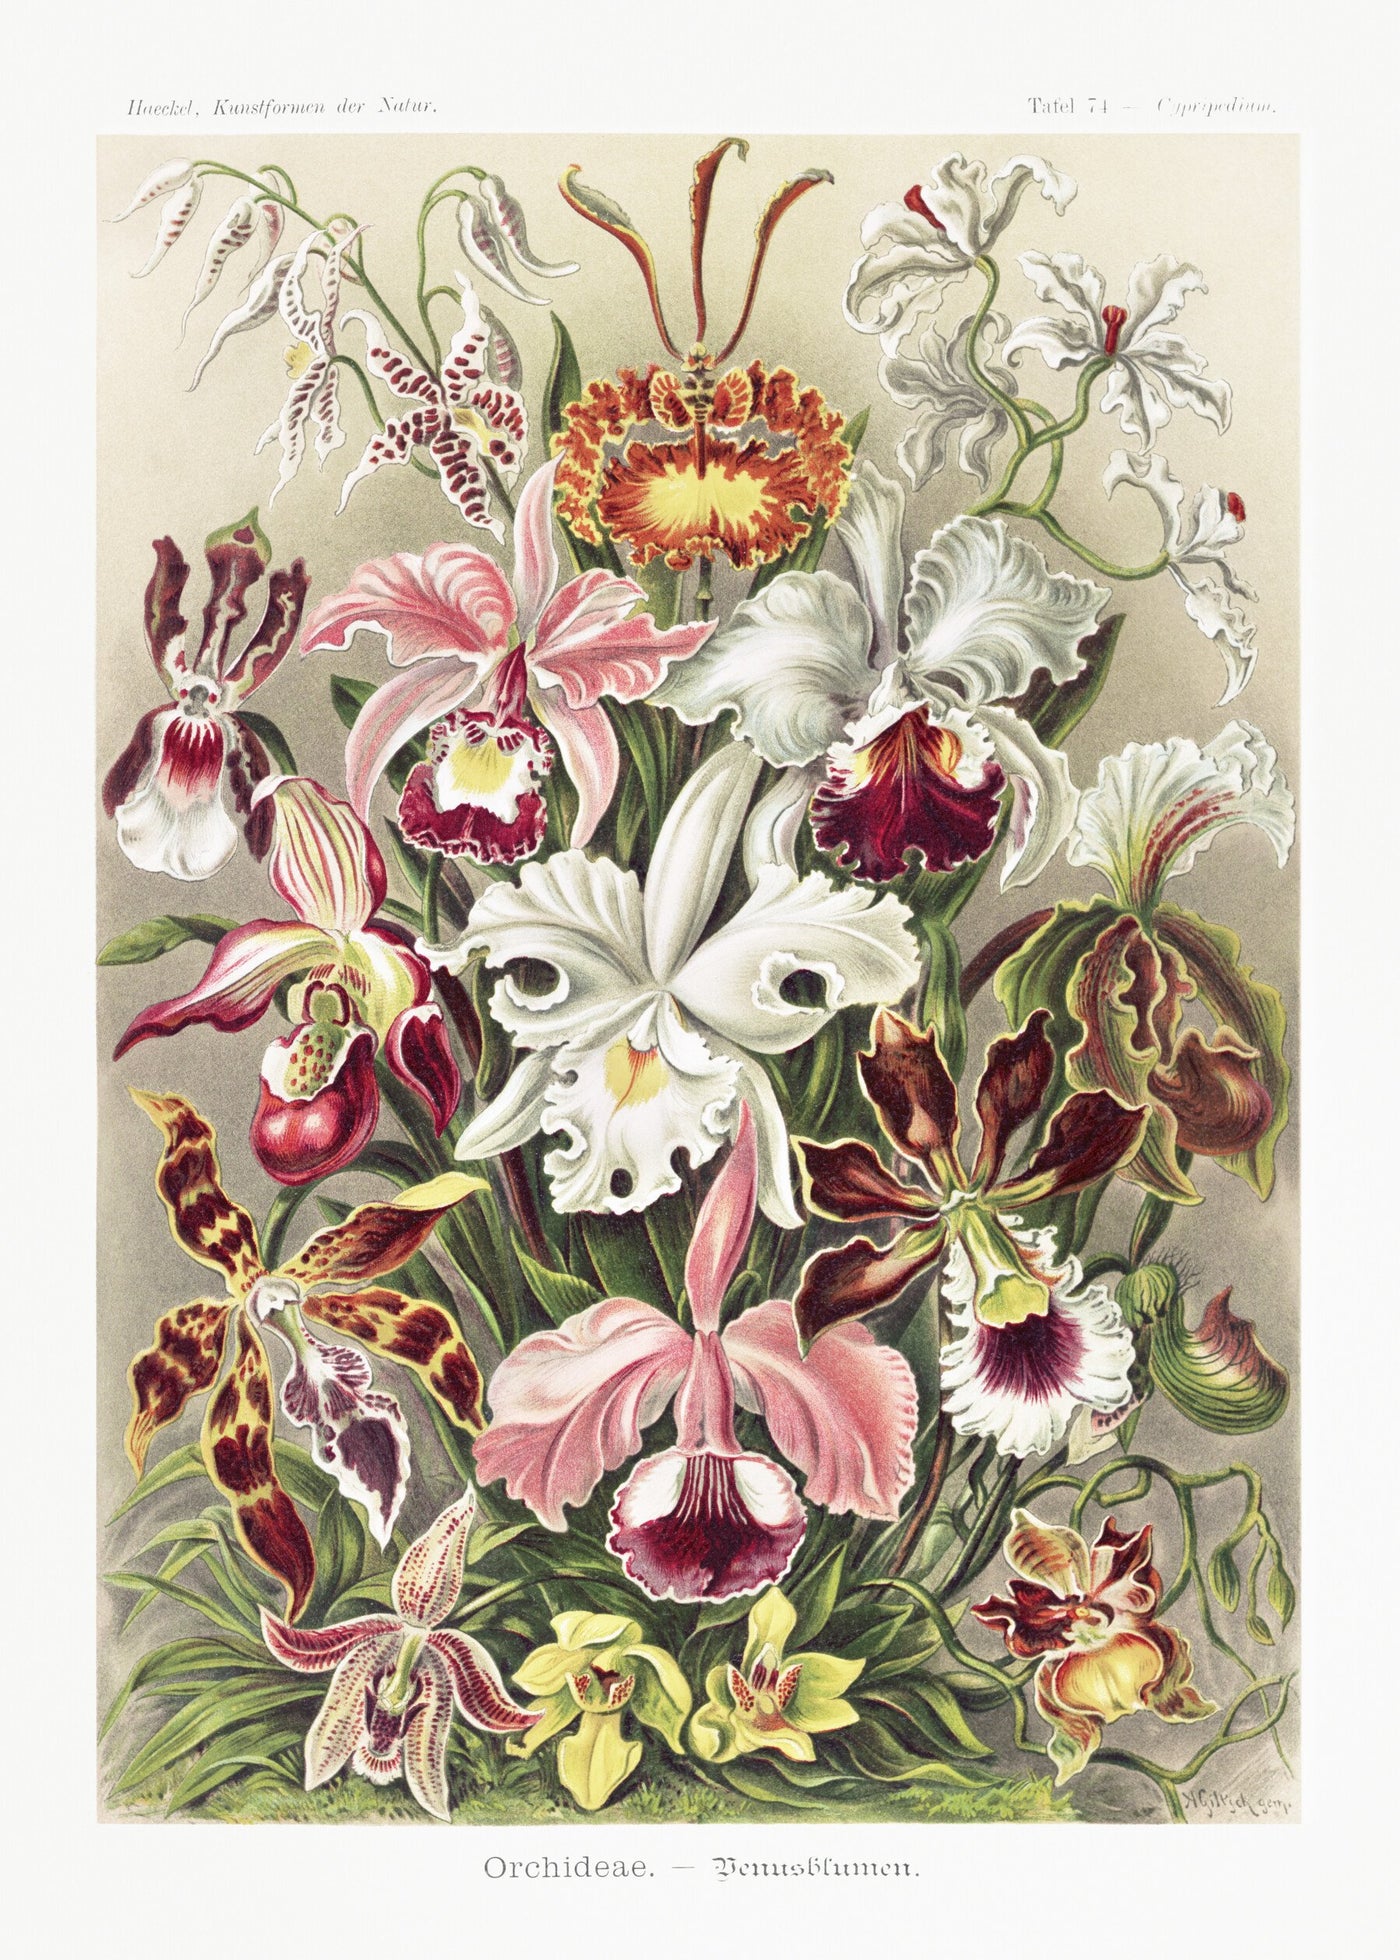 Orchideae–Denusblumen - Ernst Haeckel